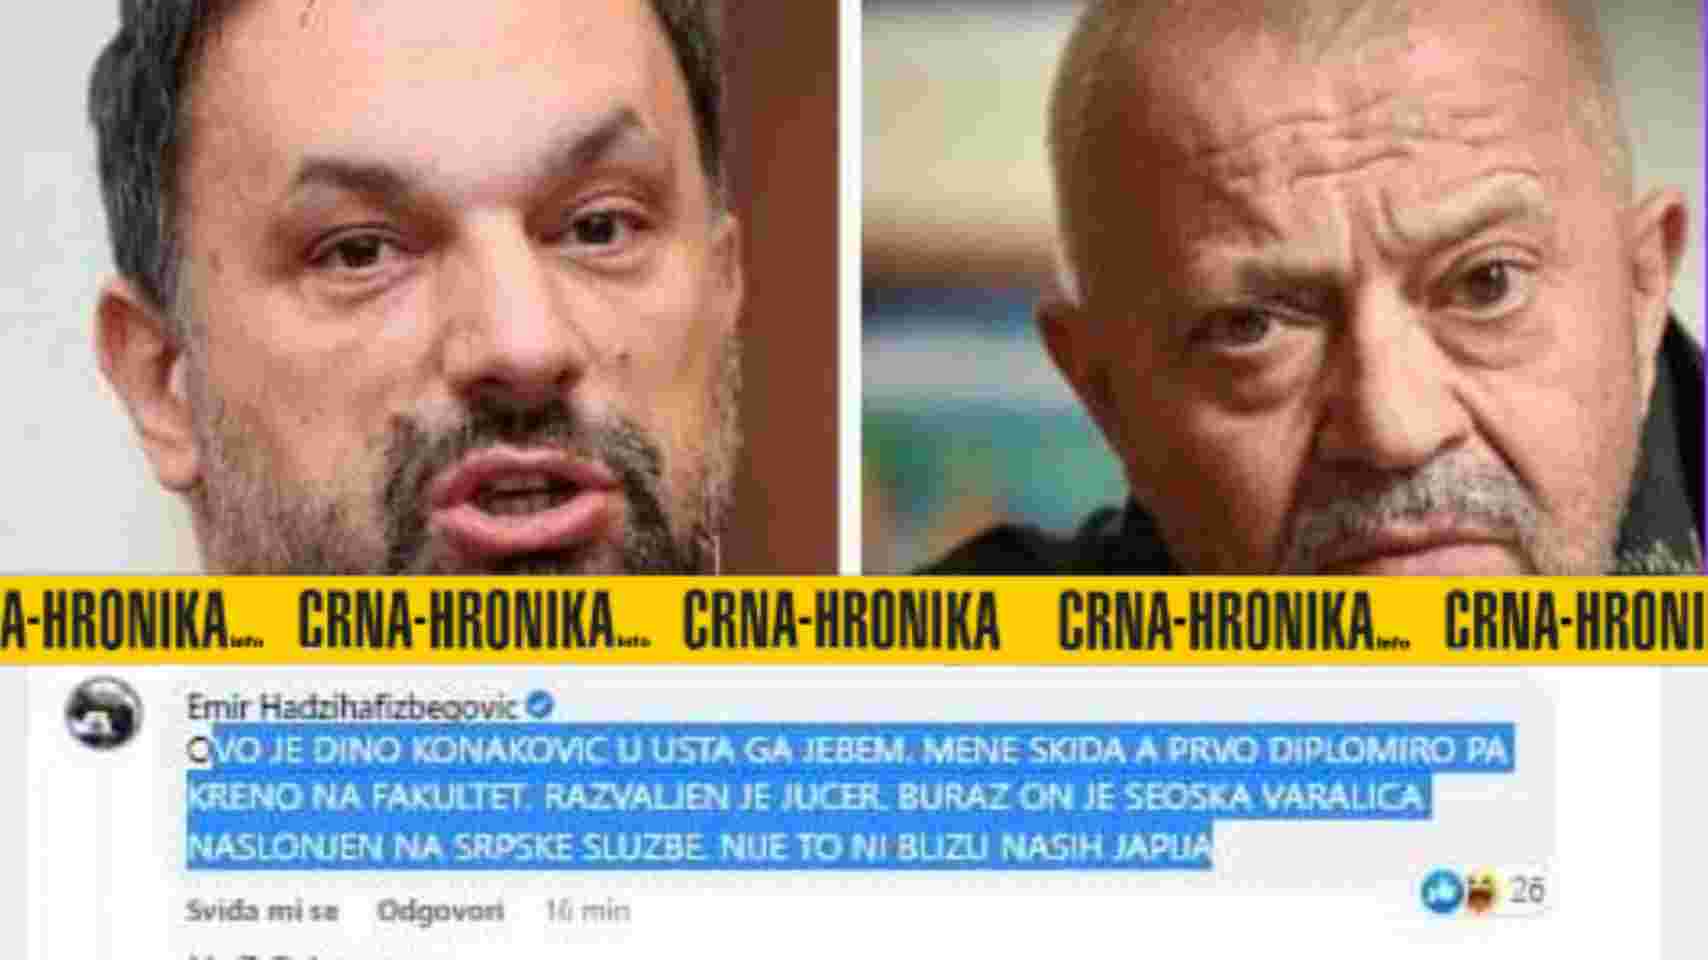 Hadžihafizbegović na FB: Ovo je Konaković u usta ga j****m. Glumac tvrdi da nije on napisao…